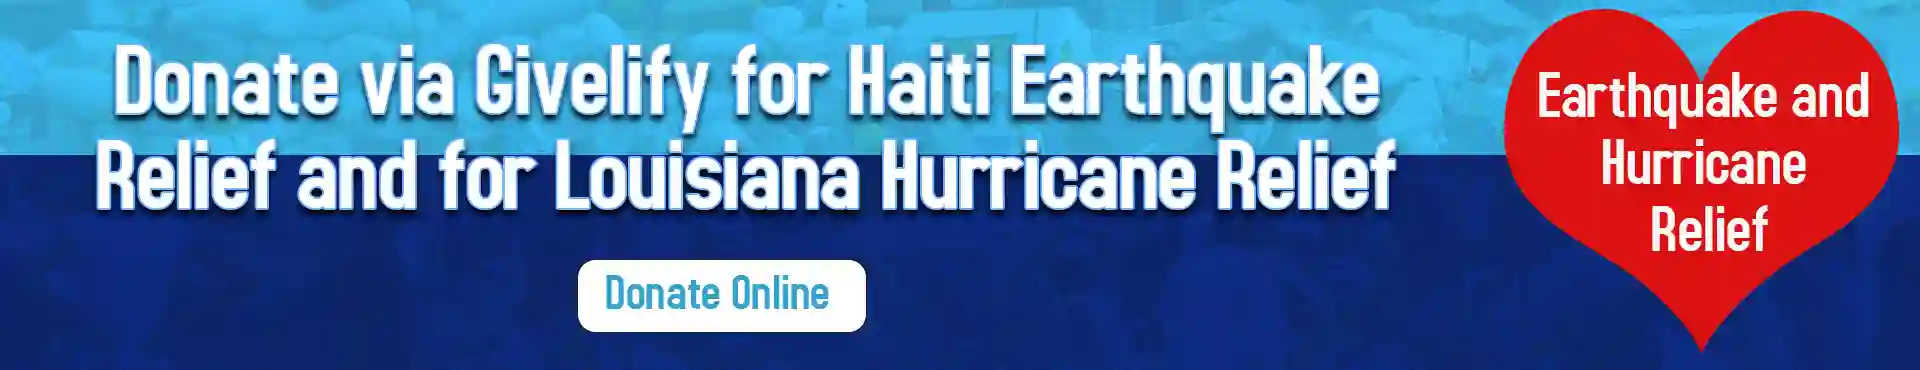 Donations for Haiti and Louisiana